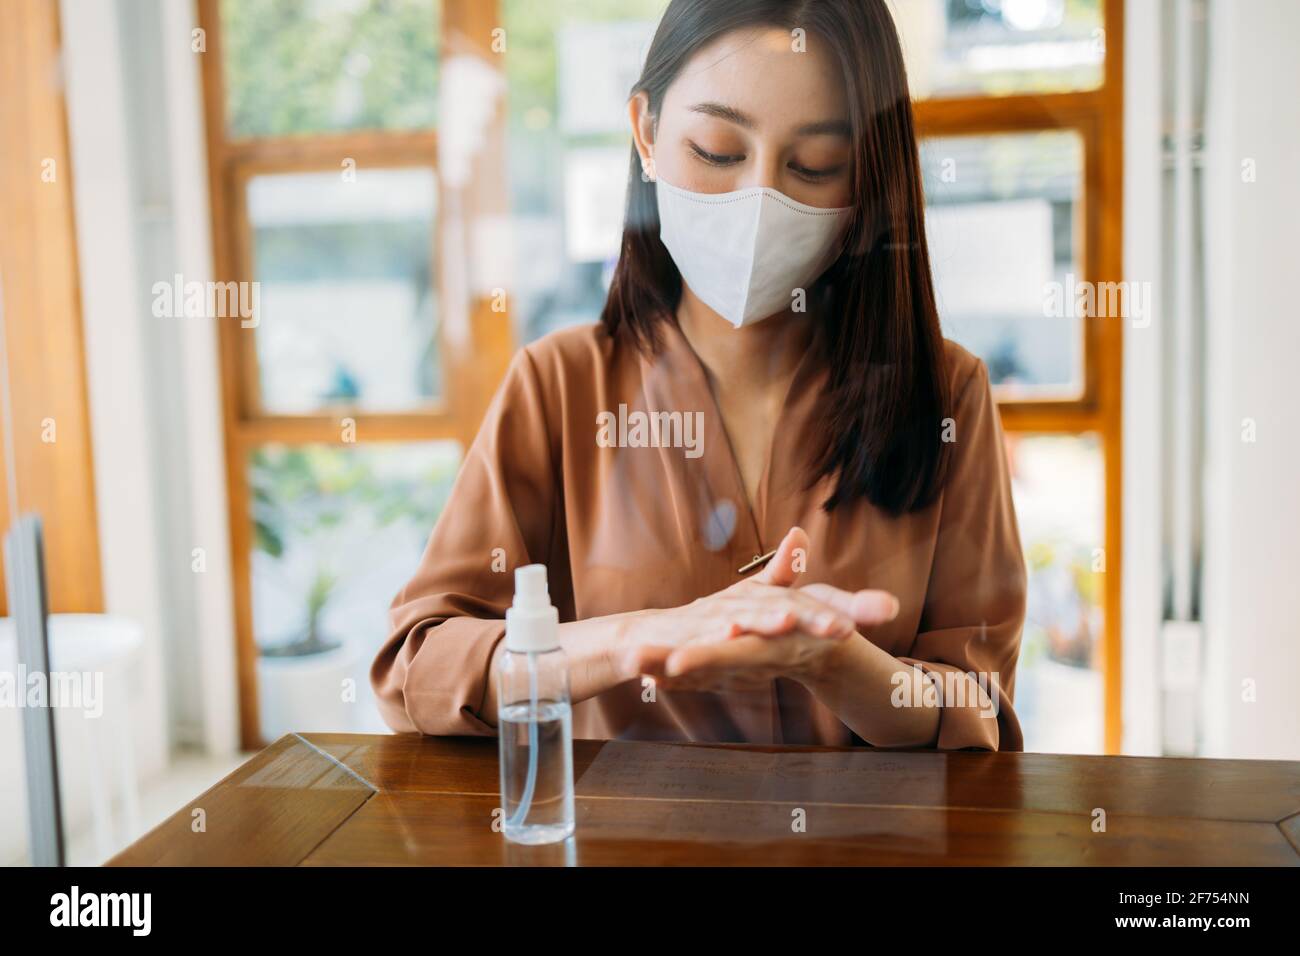 Junge asiatische Frau trägt covid-19 Gesichtsschutz Maske und Waschen Und die Desinfektion von Händen mit einem medizinischen Händedesinfektionsmittel aus Sicherheitsgründen Und Vorsorge gegen Viren Stockfoto